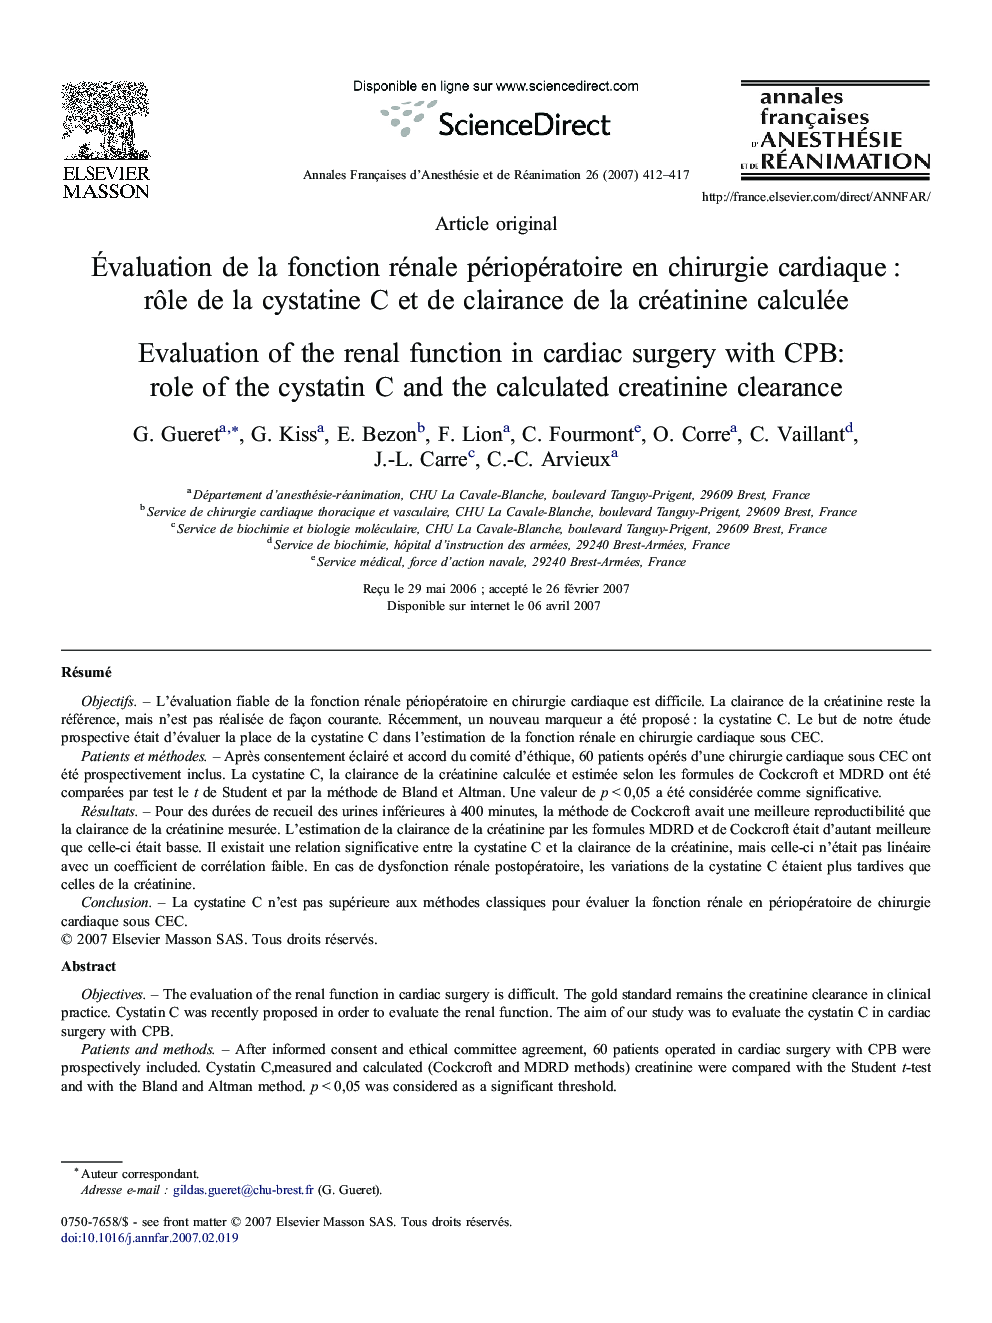 Évaluation de la fonction rénale périopératoire en chirurgie cardiaque : rôle de la cystatine C et de clairance de la créatinine calculée